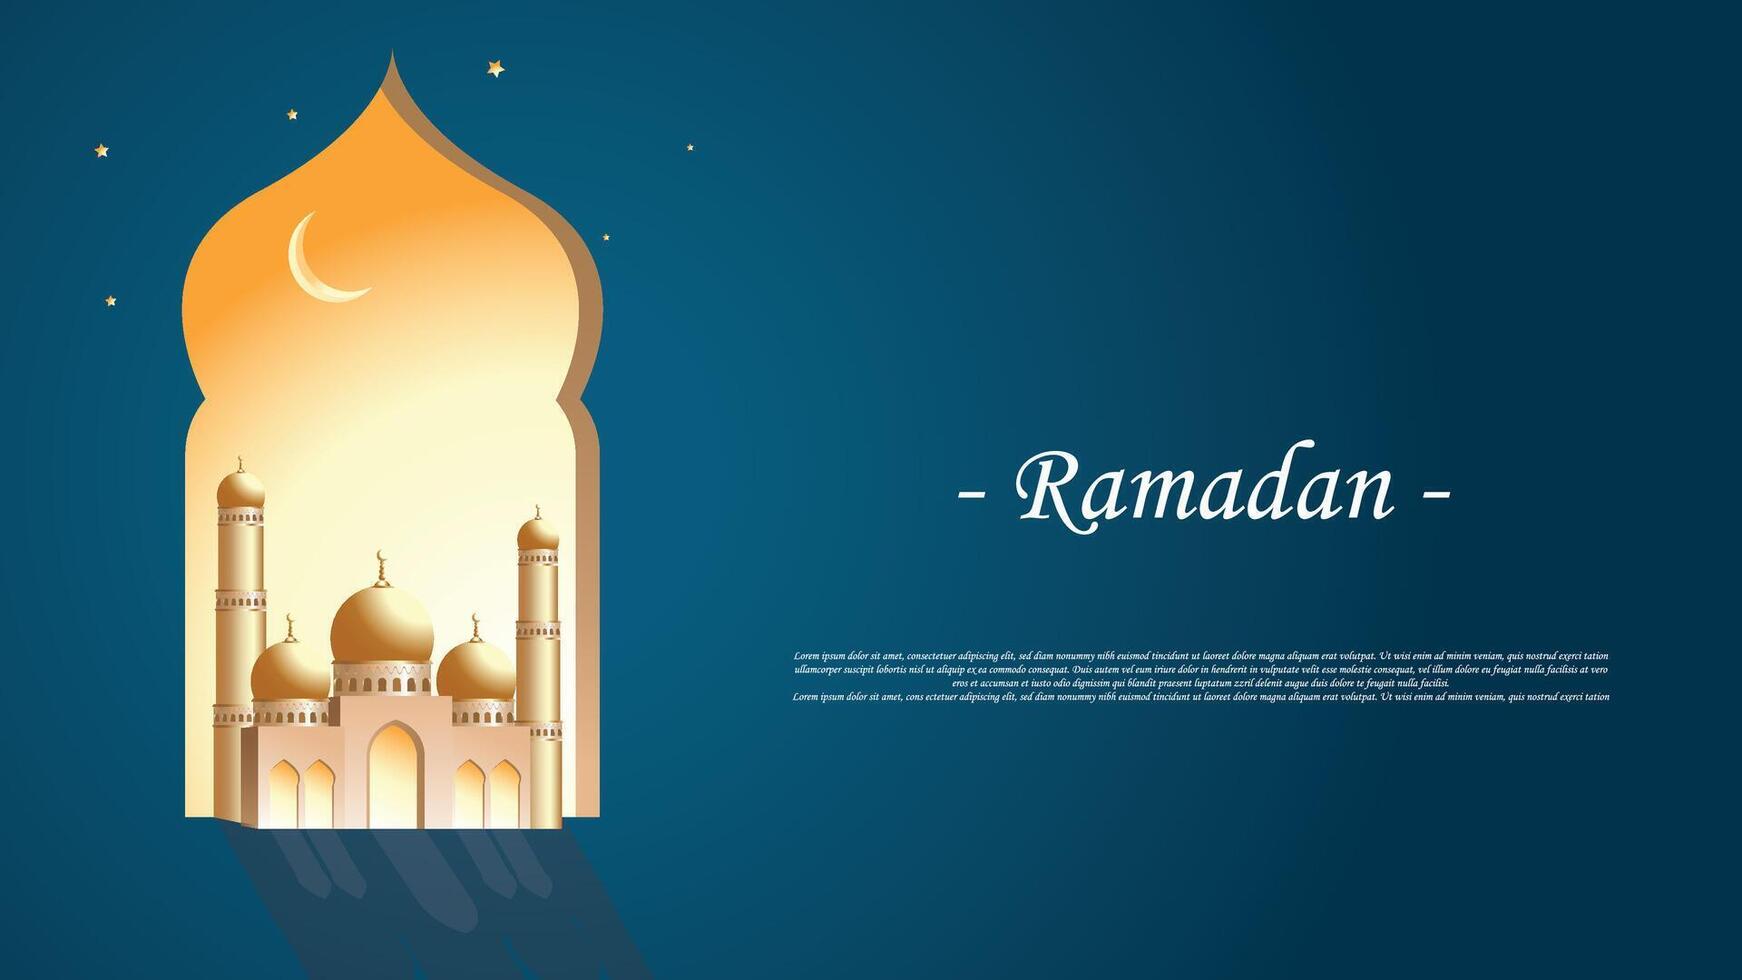 gouden moskee van Ramadan viering achtergrond illustratie. vector